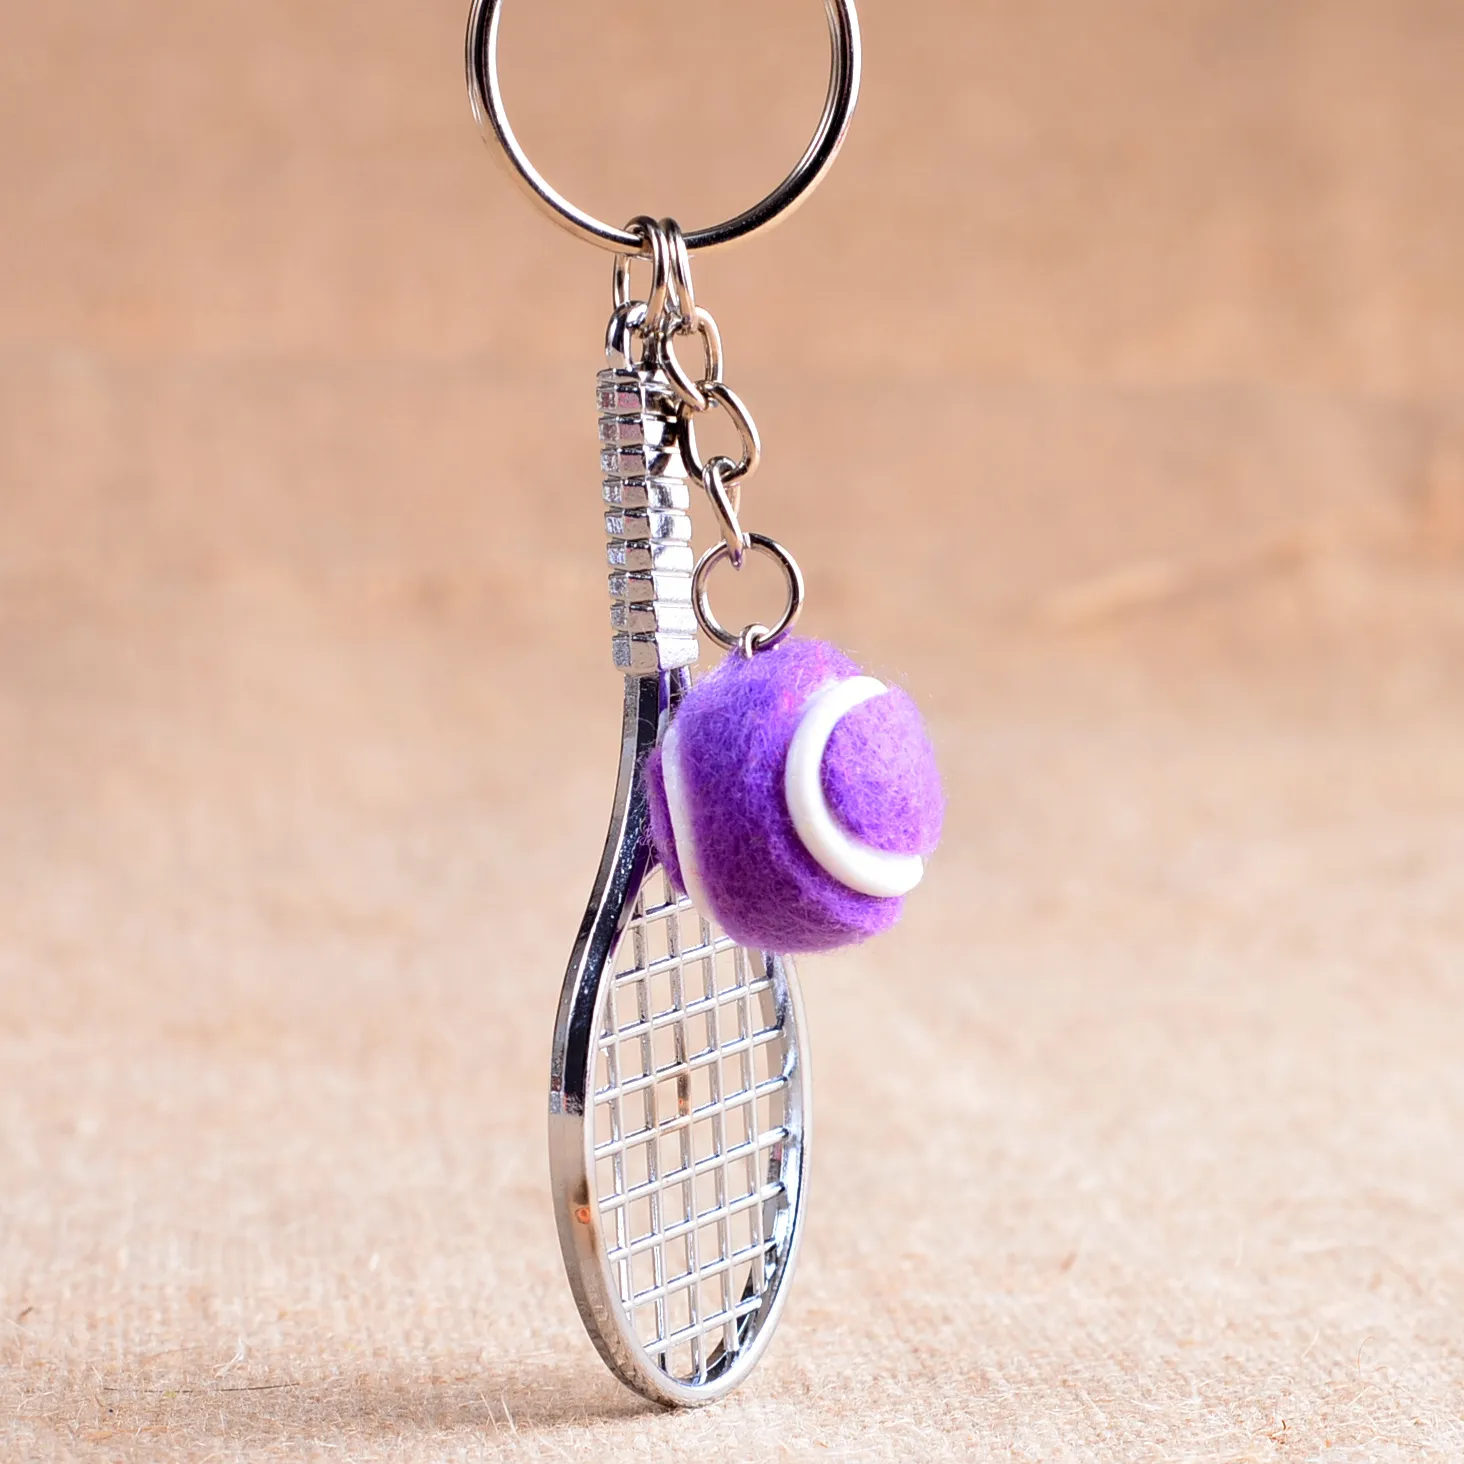 Högkvalitativ Mini Tennis Racket Key Holder Metal Mesh Racket Key Holder kan anpassas KR163 Nyckelringar Blanda Beställ 20 stycken Mycket